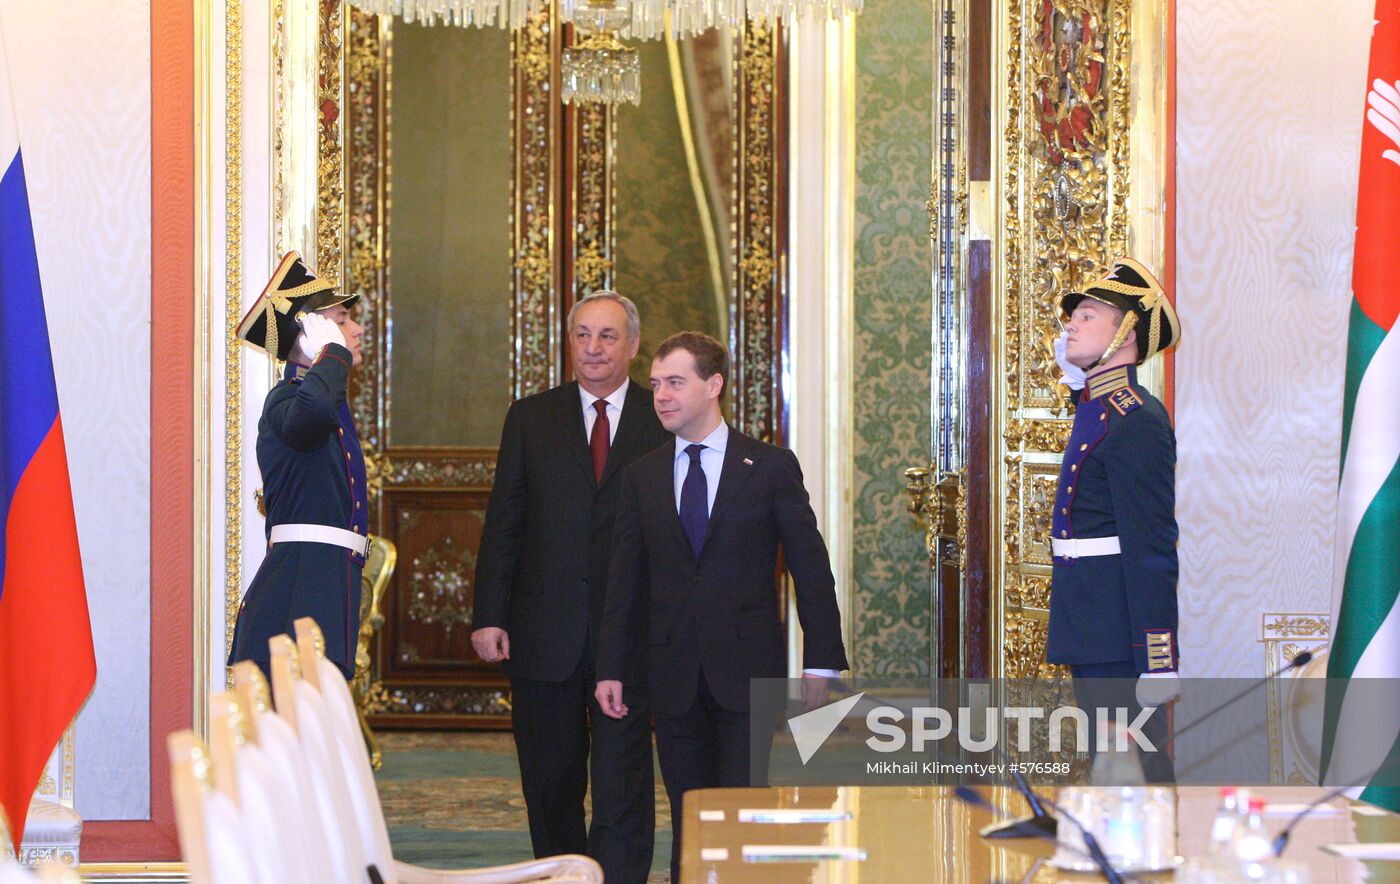 Dmitry Medvedev meets with Sergei Bagapsh